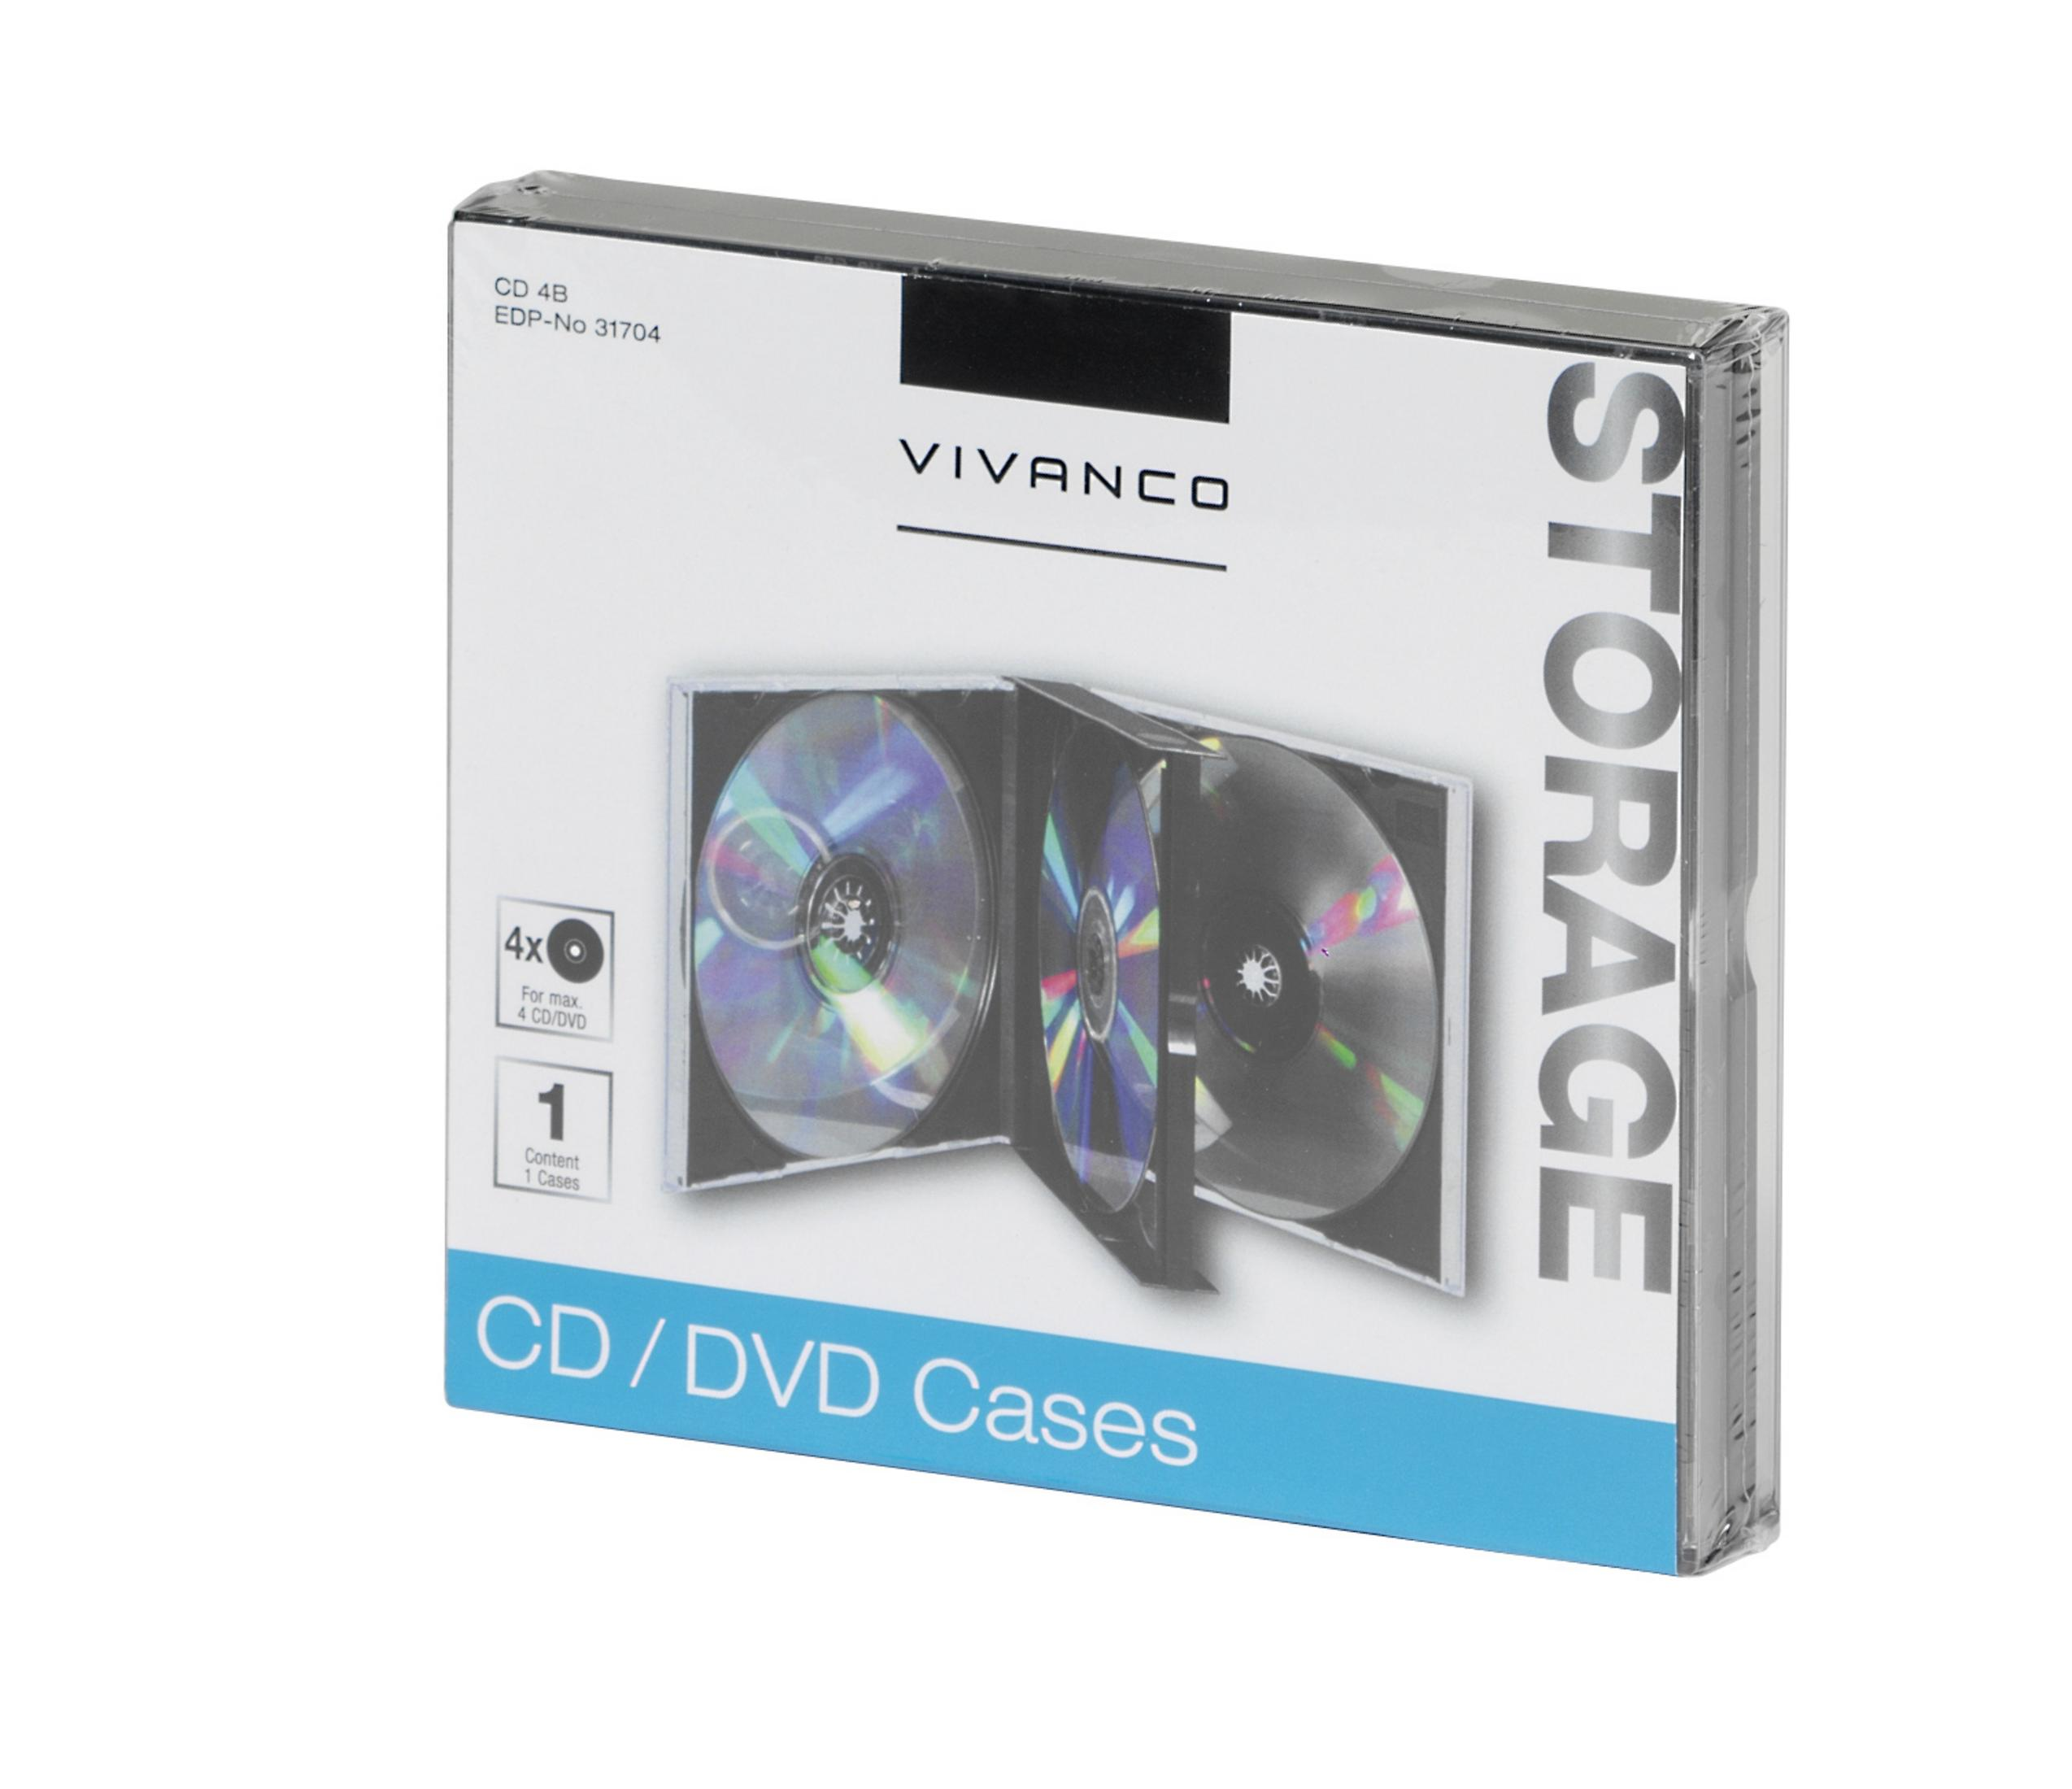 Schwarz SCHWARZ CASE und VIVANCO JEWEL CDs Archivierung DVDs CD 31704